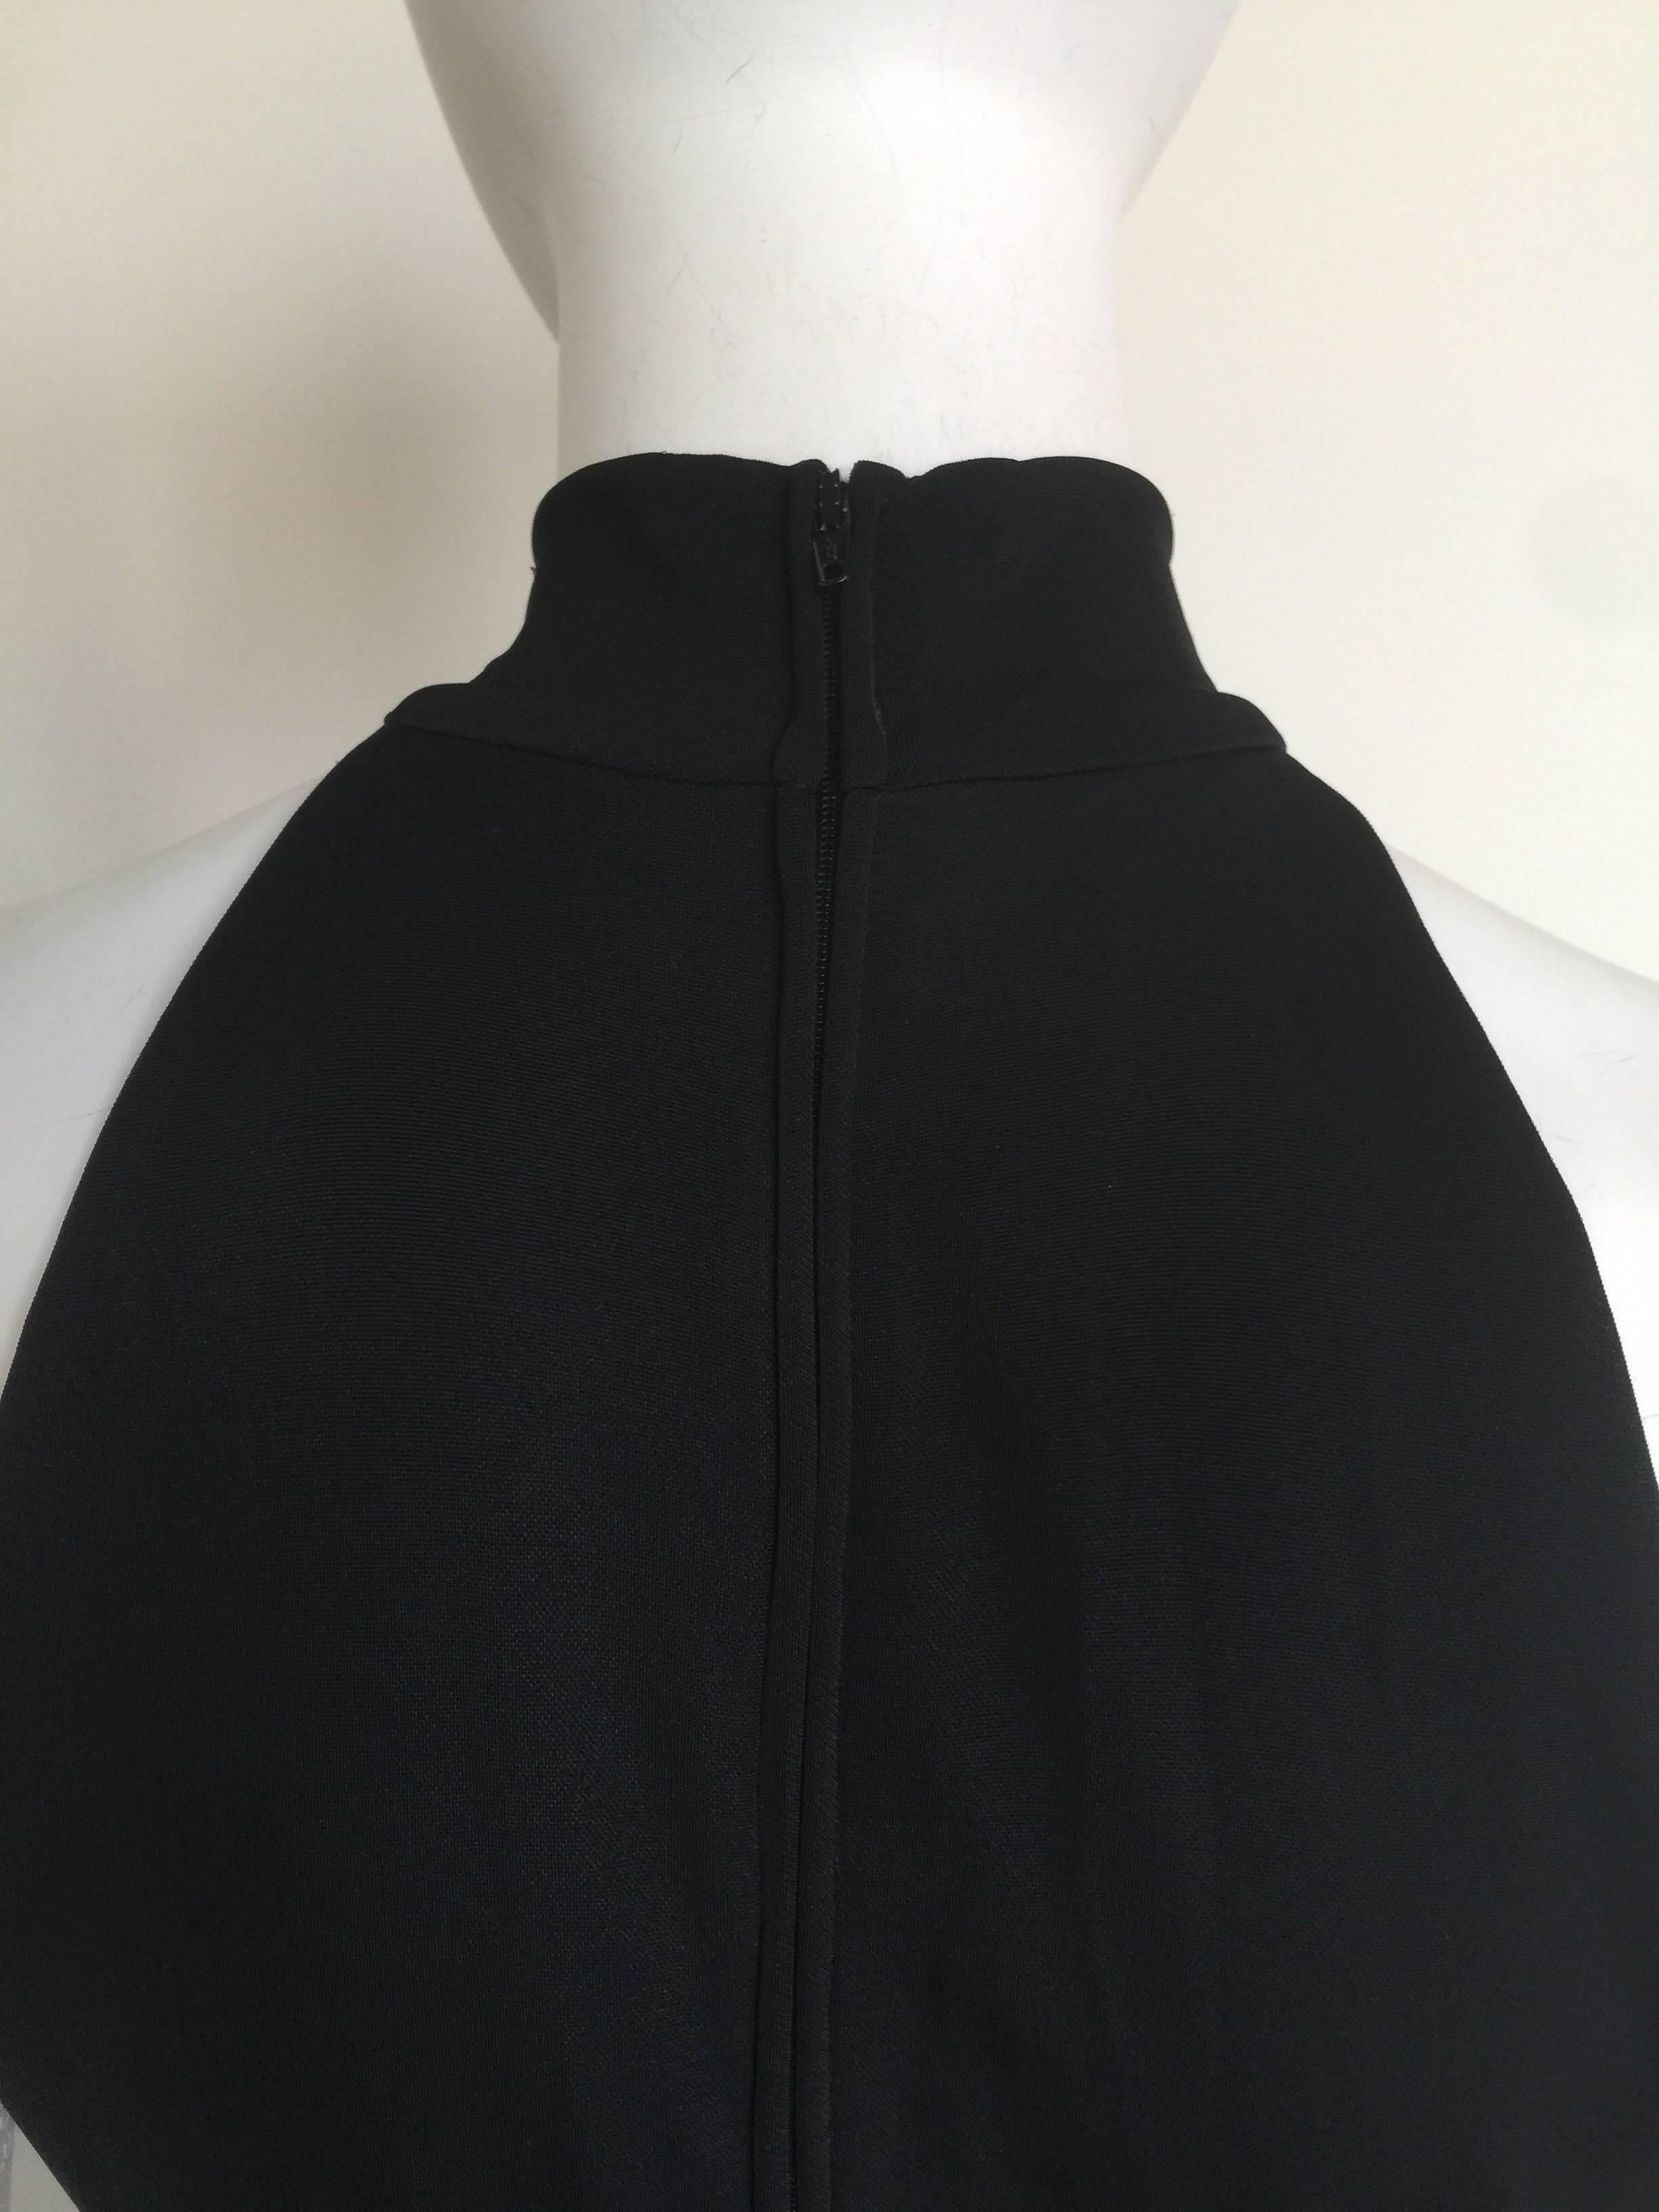 Lillie Rubin Black Sleeveless Ruffled Dress For Sale 1